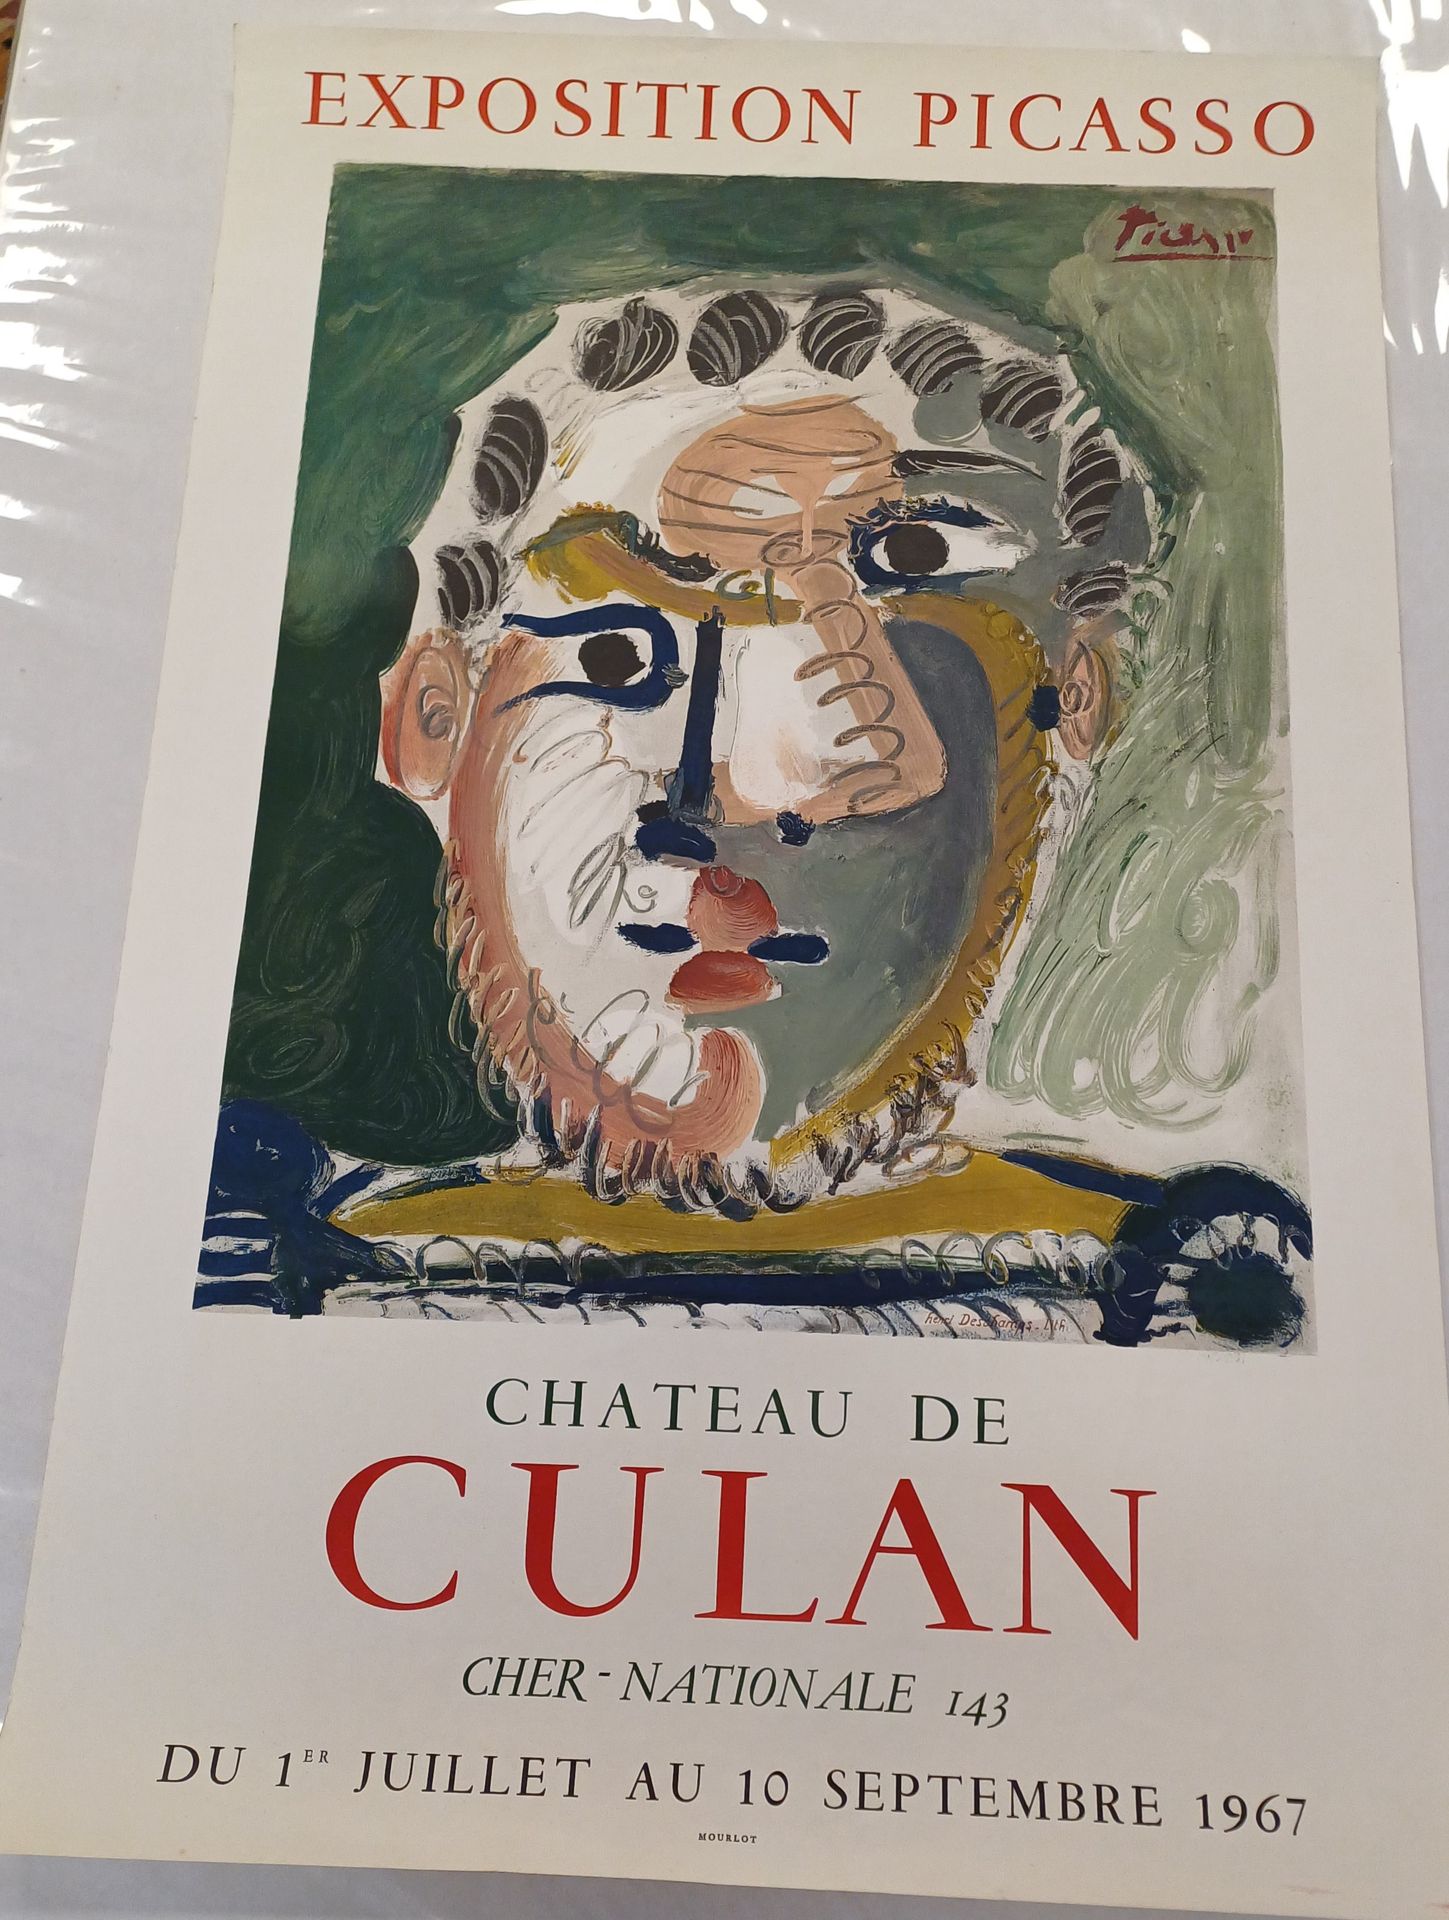 Picasso Affiche Exposition Picasso
Château de Culan 1967
78 x 51,5 cm